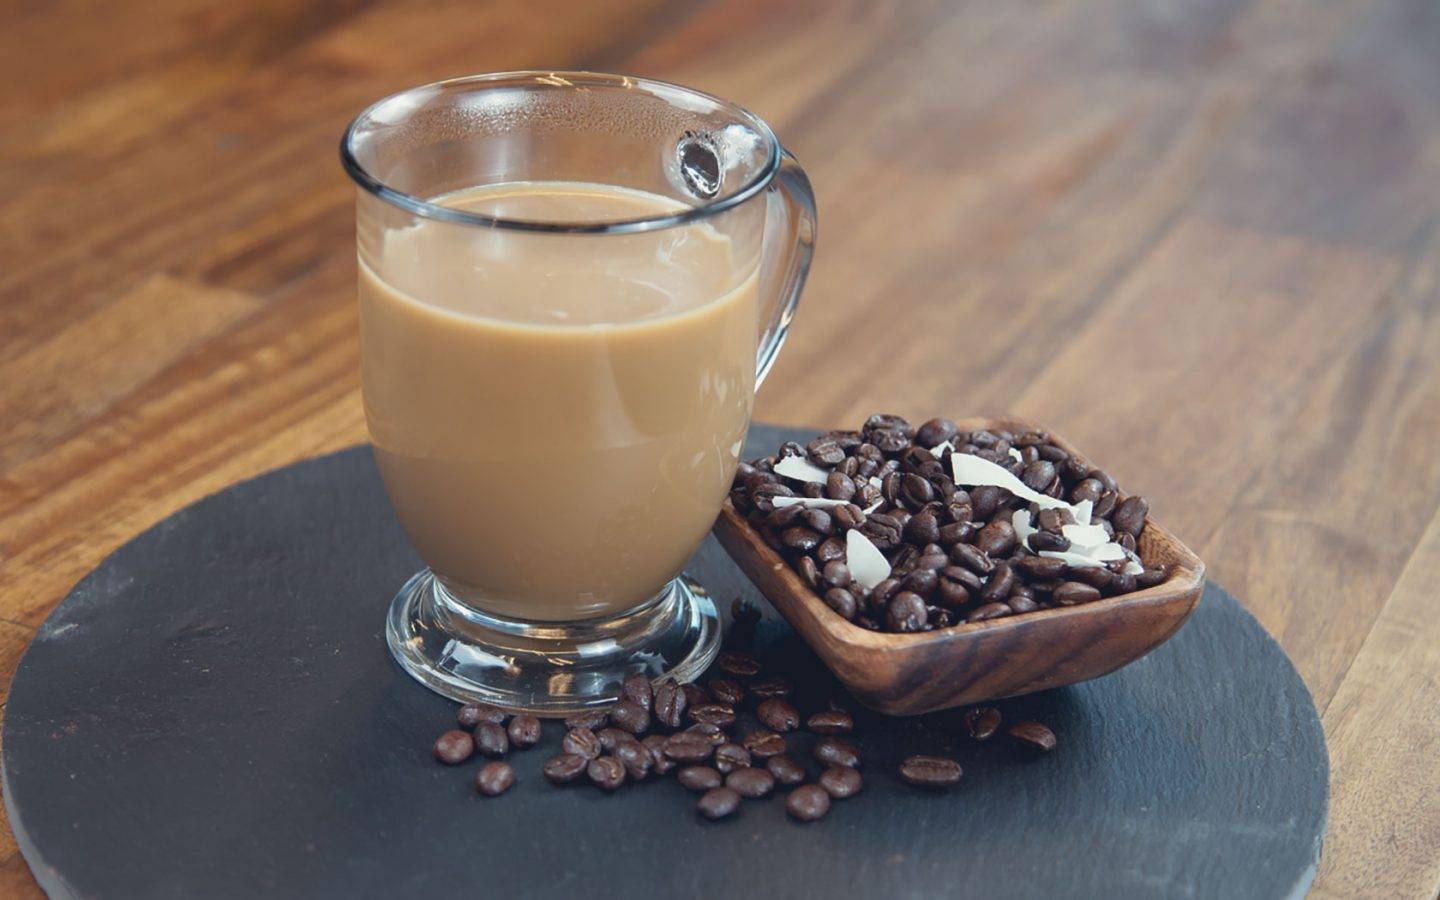 Кофе и кокосовое молоко – торжество вкуса